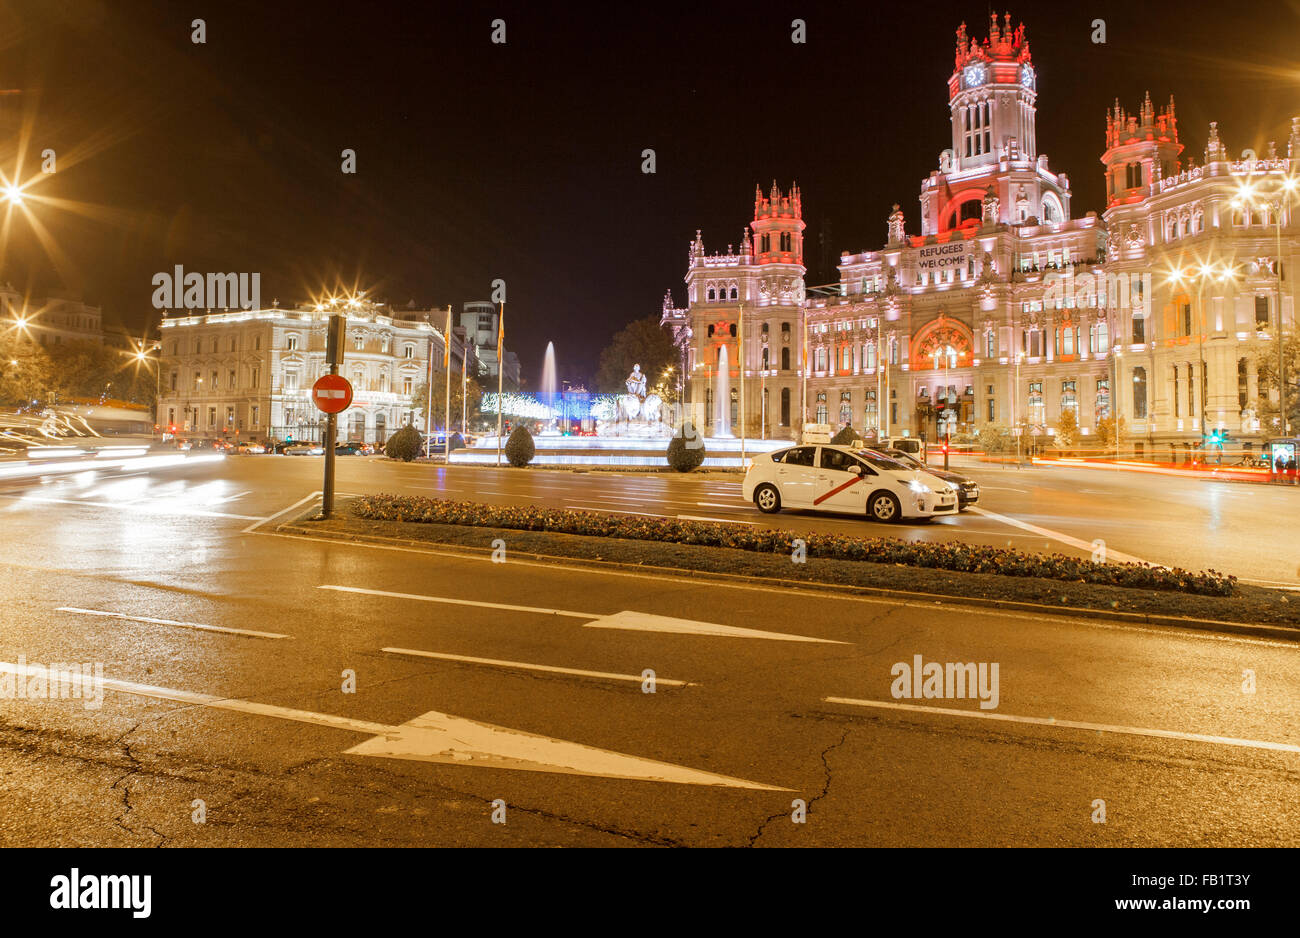 MADRID - 5 Dezember: Cibeles-Brunnen und der Rat der Stadt in der Nacht vom 5. Dezember 2015 in Madrid, Spanien Stockfoto